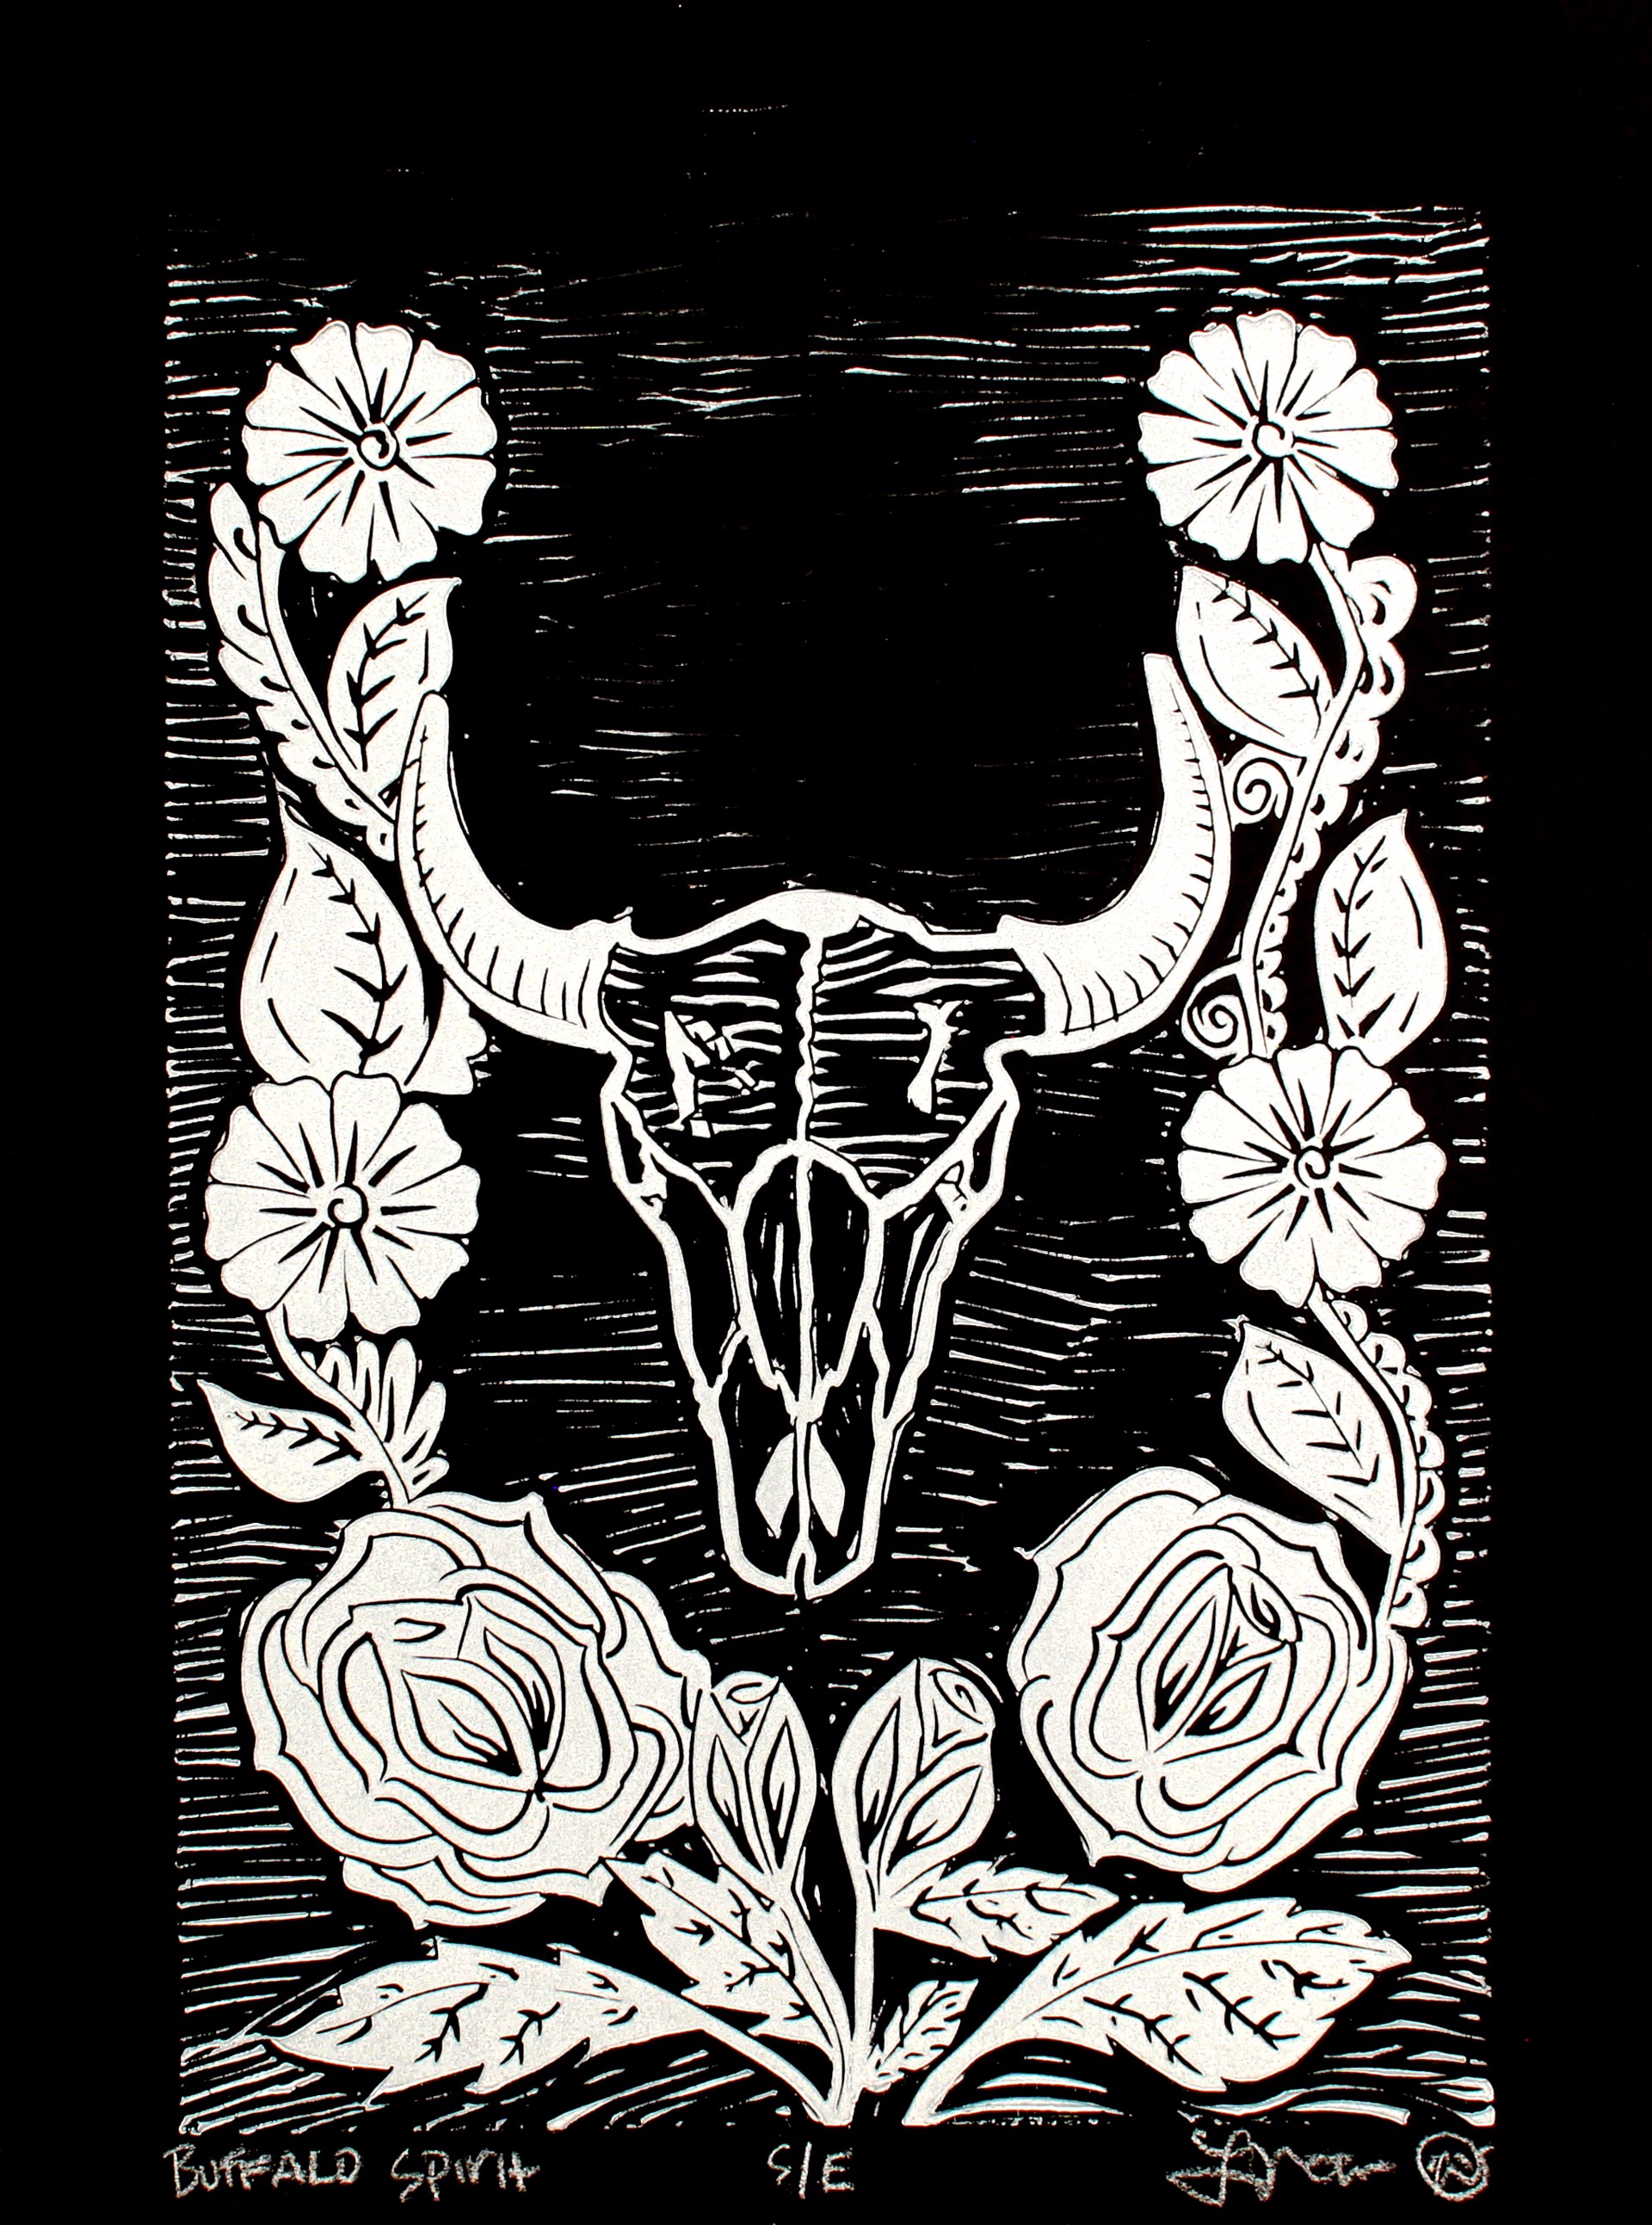 Buffalo Spirit (S/E) by Luis Garcia